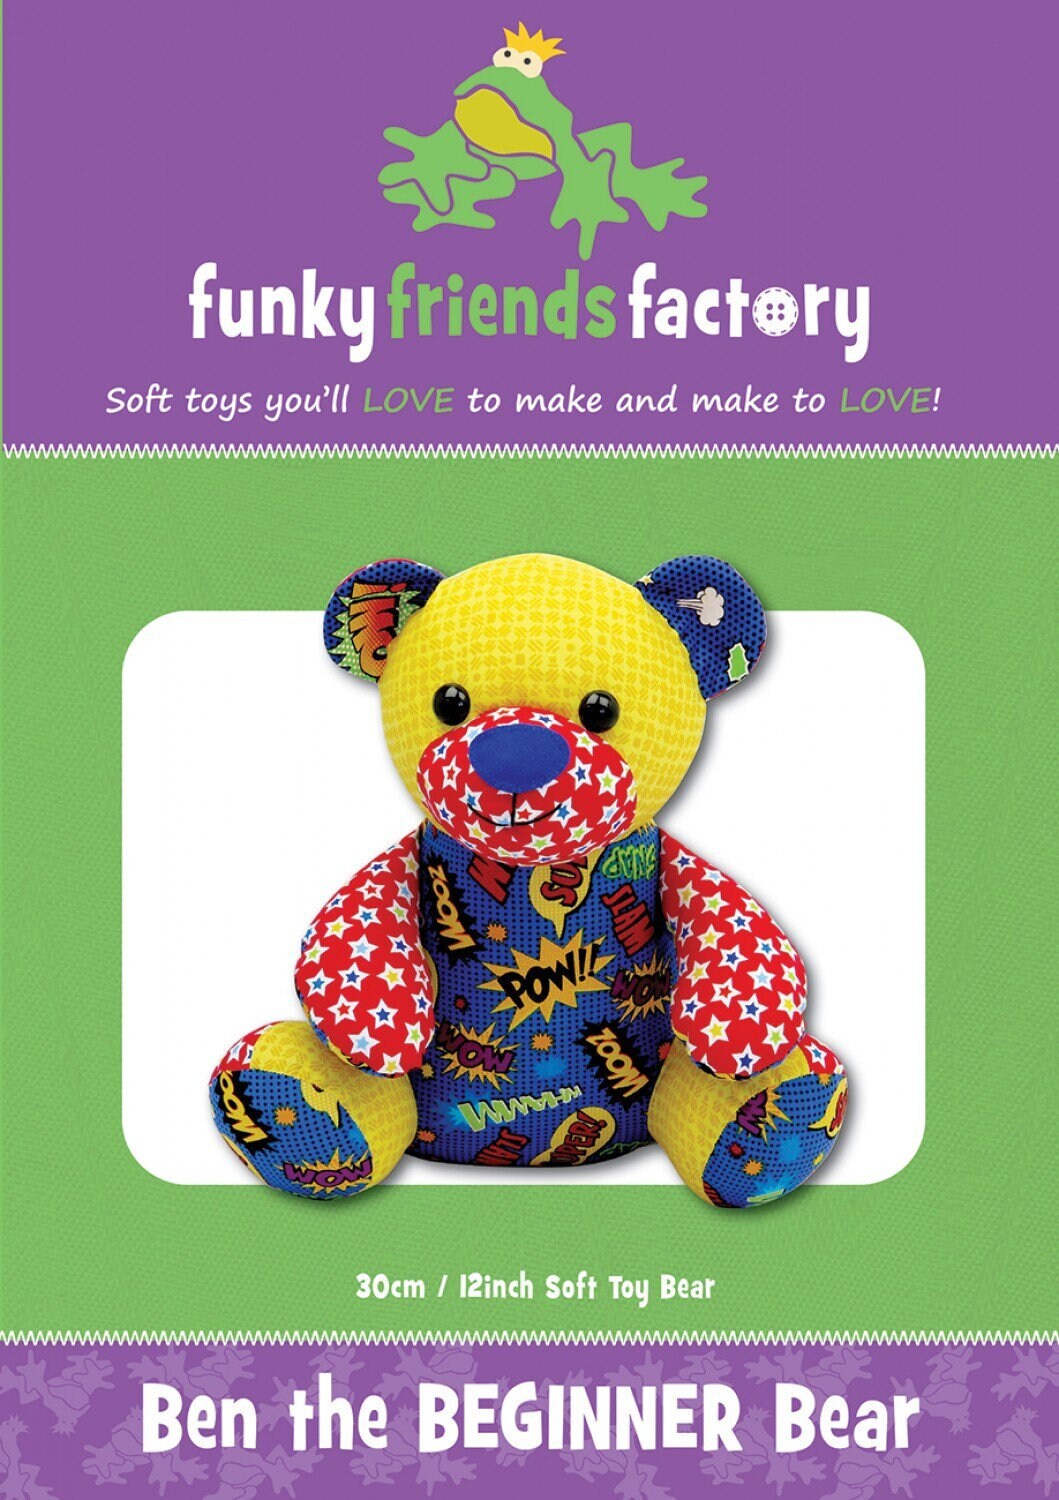 Ben the Beginner Bear - Funky Friends Stuffed Animal Pattern